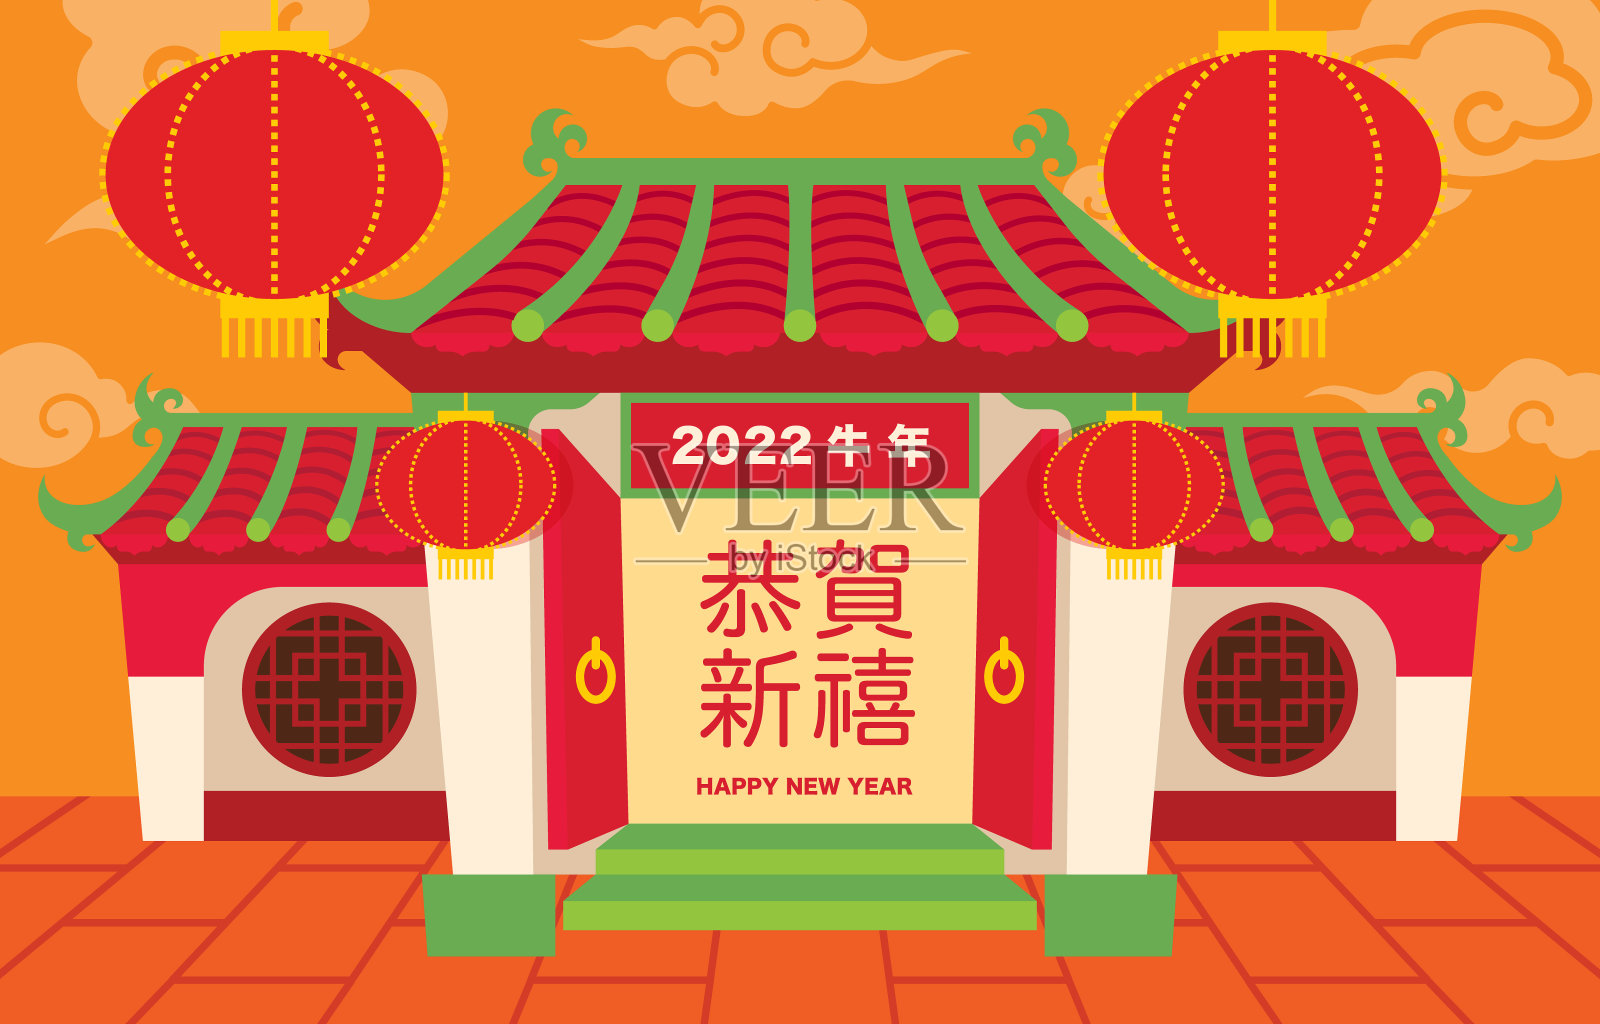 2022年春节快乐。平面设计中国传统民居和东方云朵背景。门口有书法招牌。新年快乐，繁荣或幸运设计模板素材